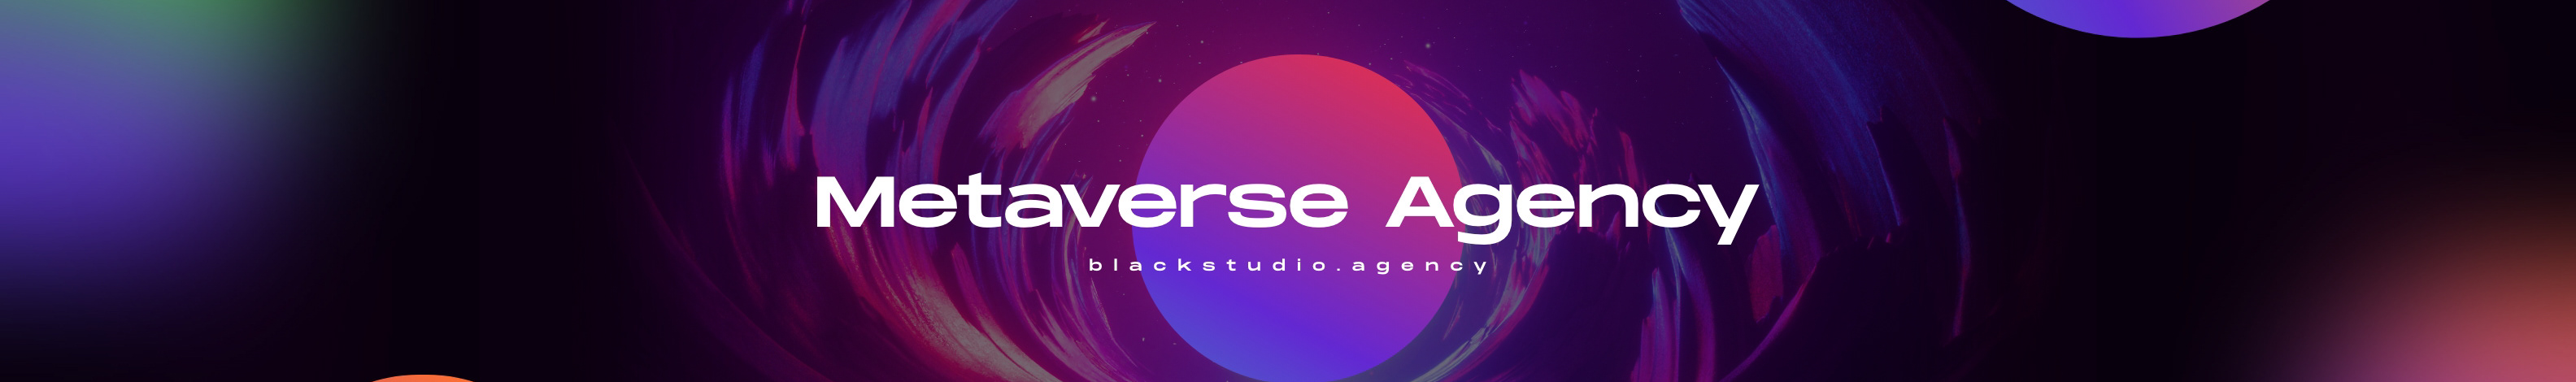 Black Studio's profile banner